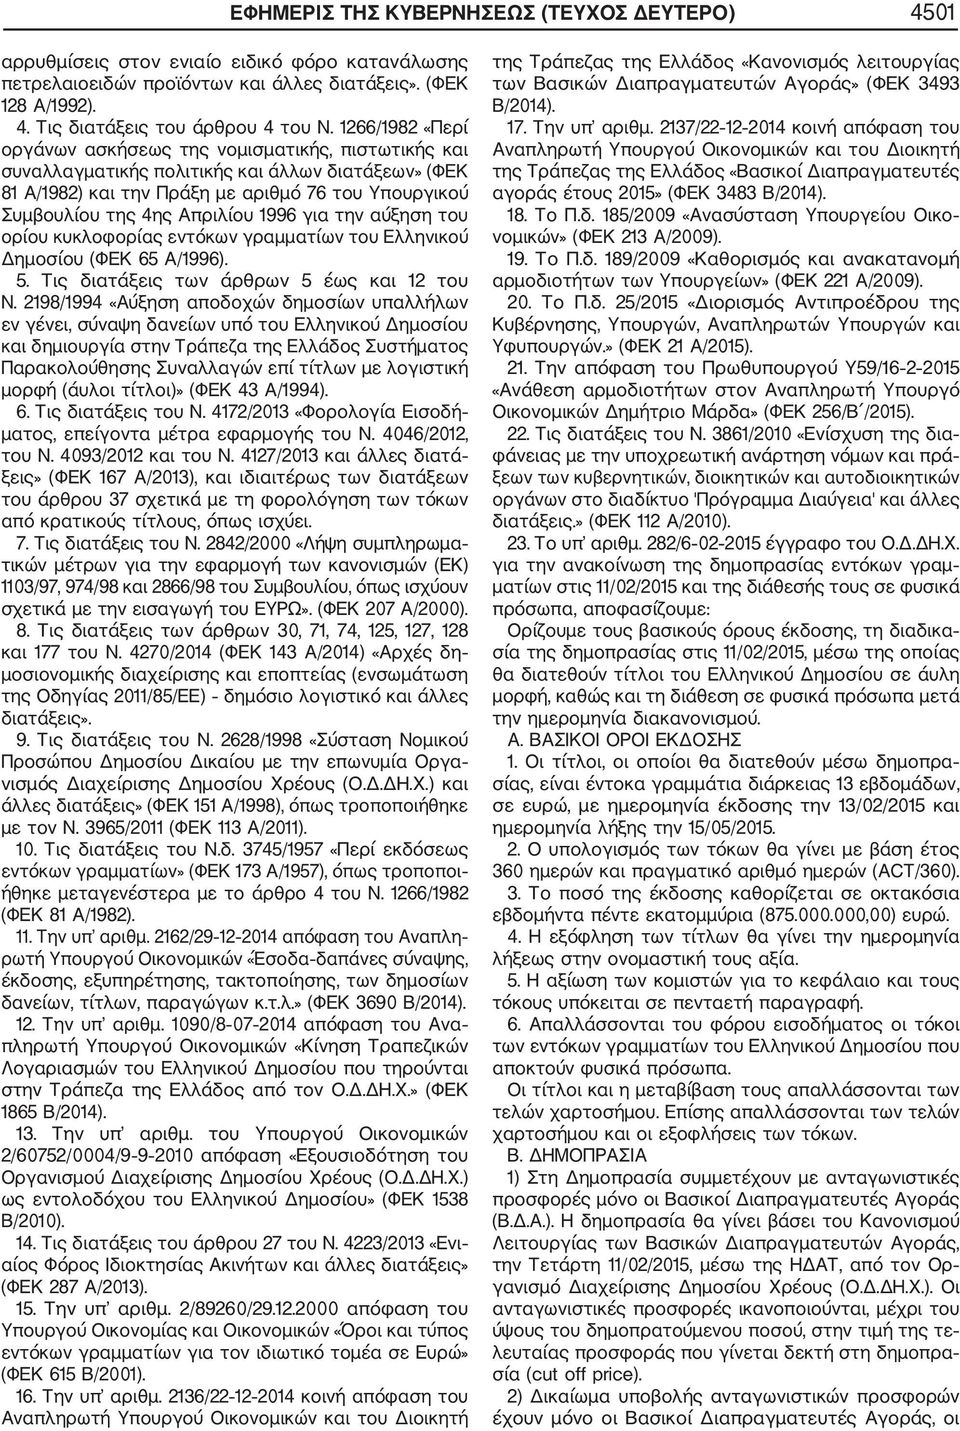 1996 για την αύξηση του ορίου κυκλοφορίας εντόκων γραμματίων του Ελληνικού Δημοσίου (ΦΕΚ 65 Α/1996). 5. Τις διατάξεις των άρθρων 5 έως και 12 του N.